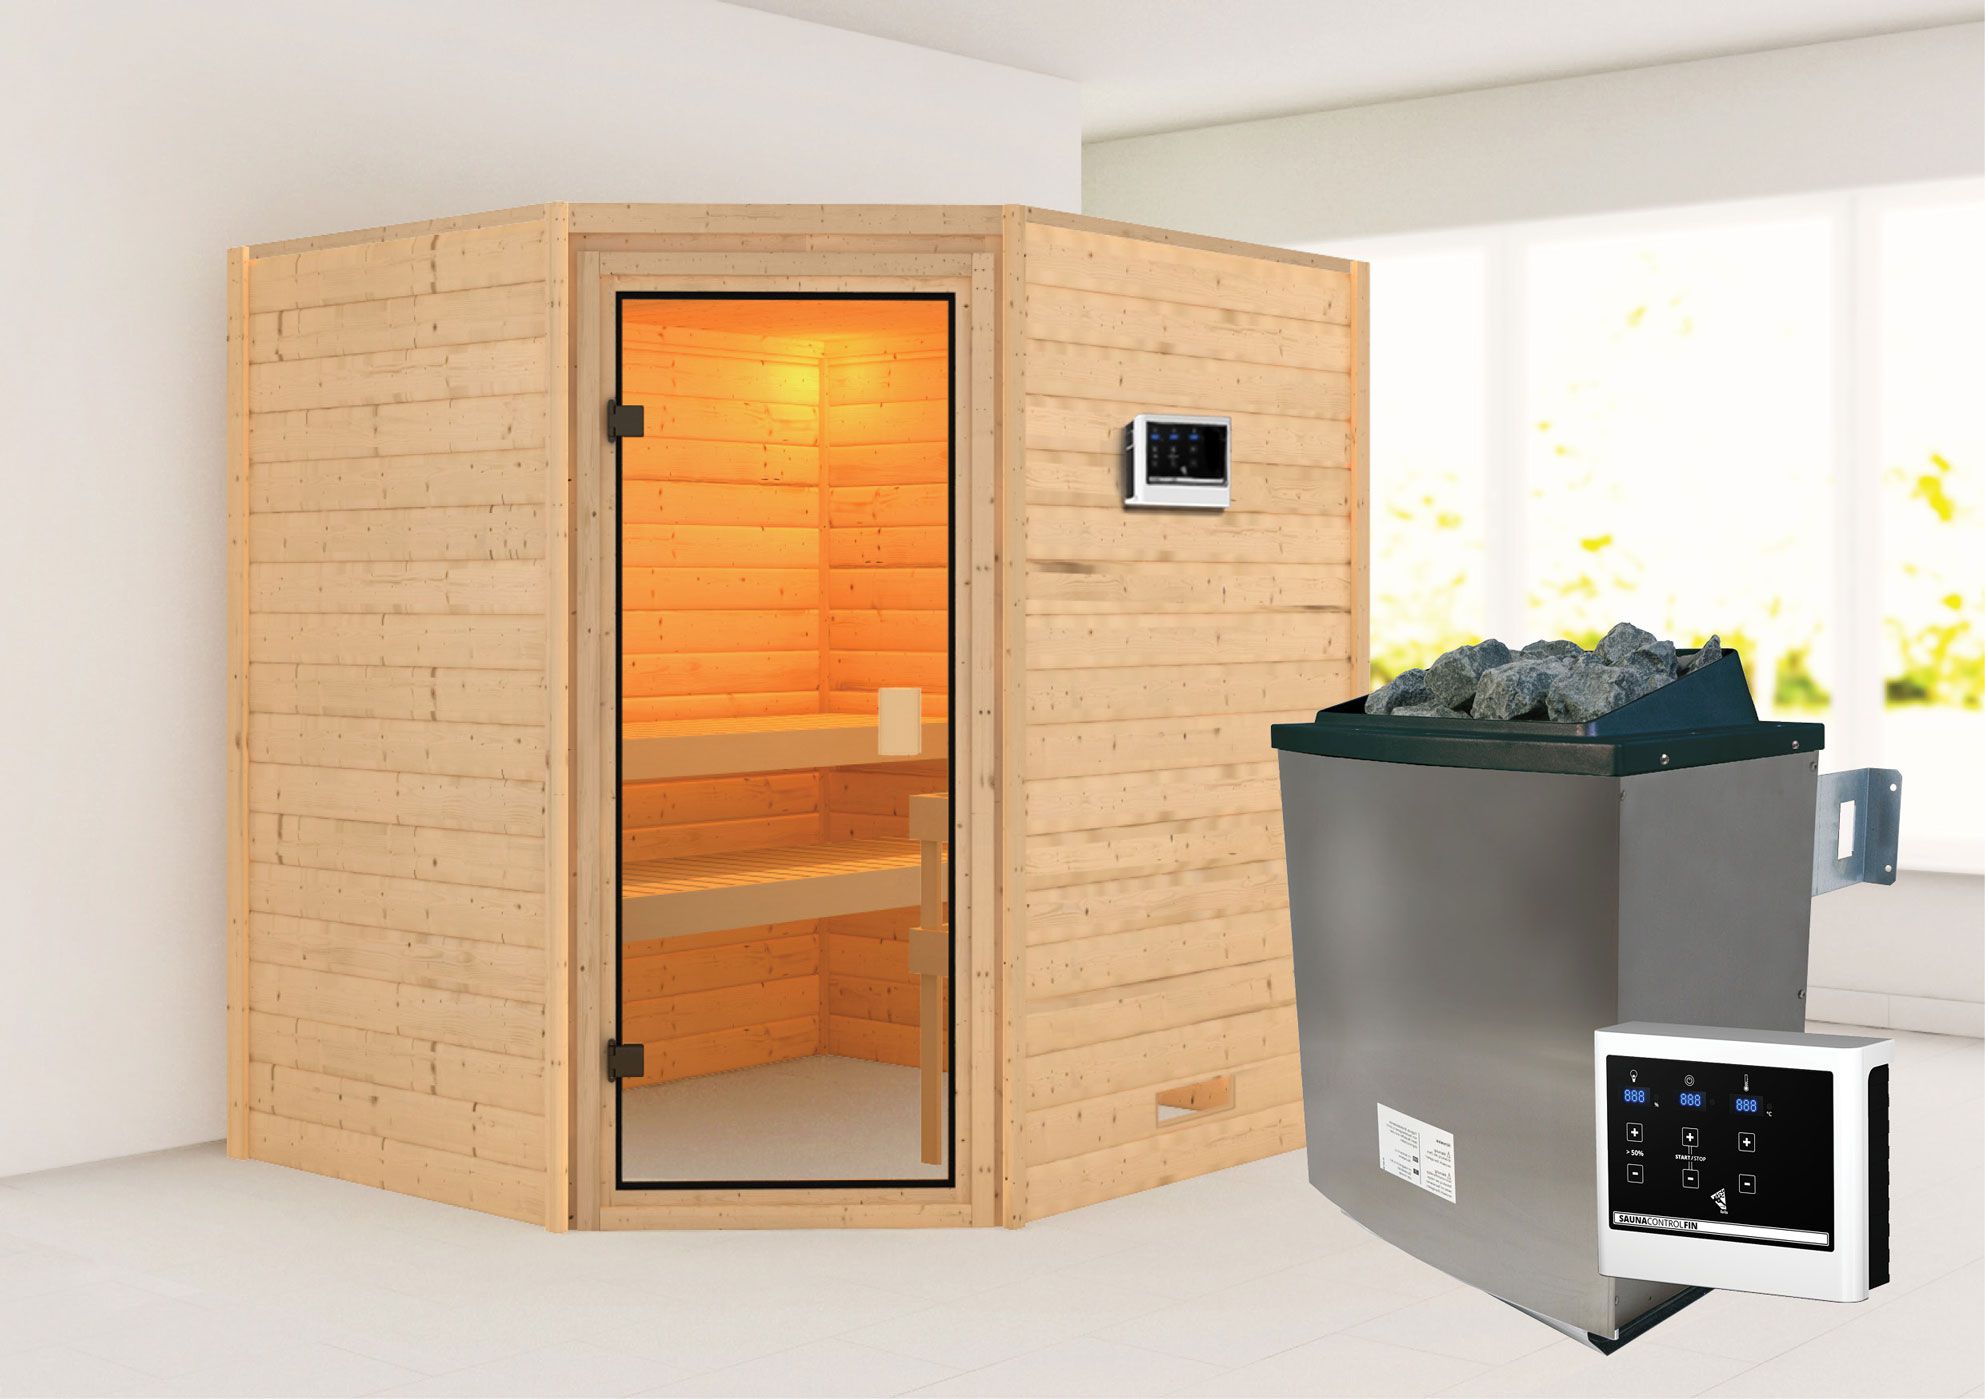 Sauna "Kirsa" SET AKTION mit bronzierter Tür & Ofen externe Steuerung easy 9 KW - 196 x 170 x 198 cm (B x T x H)